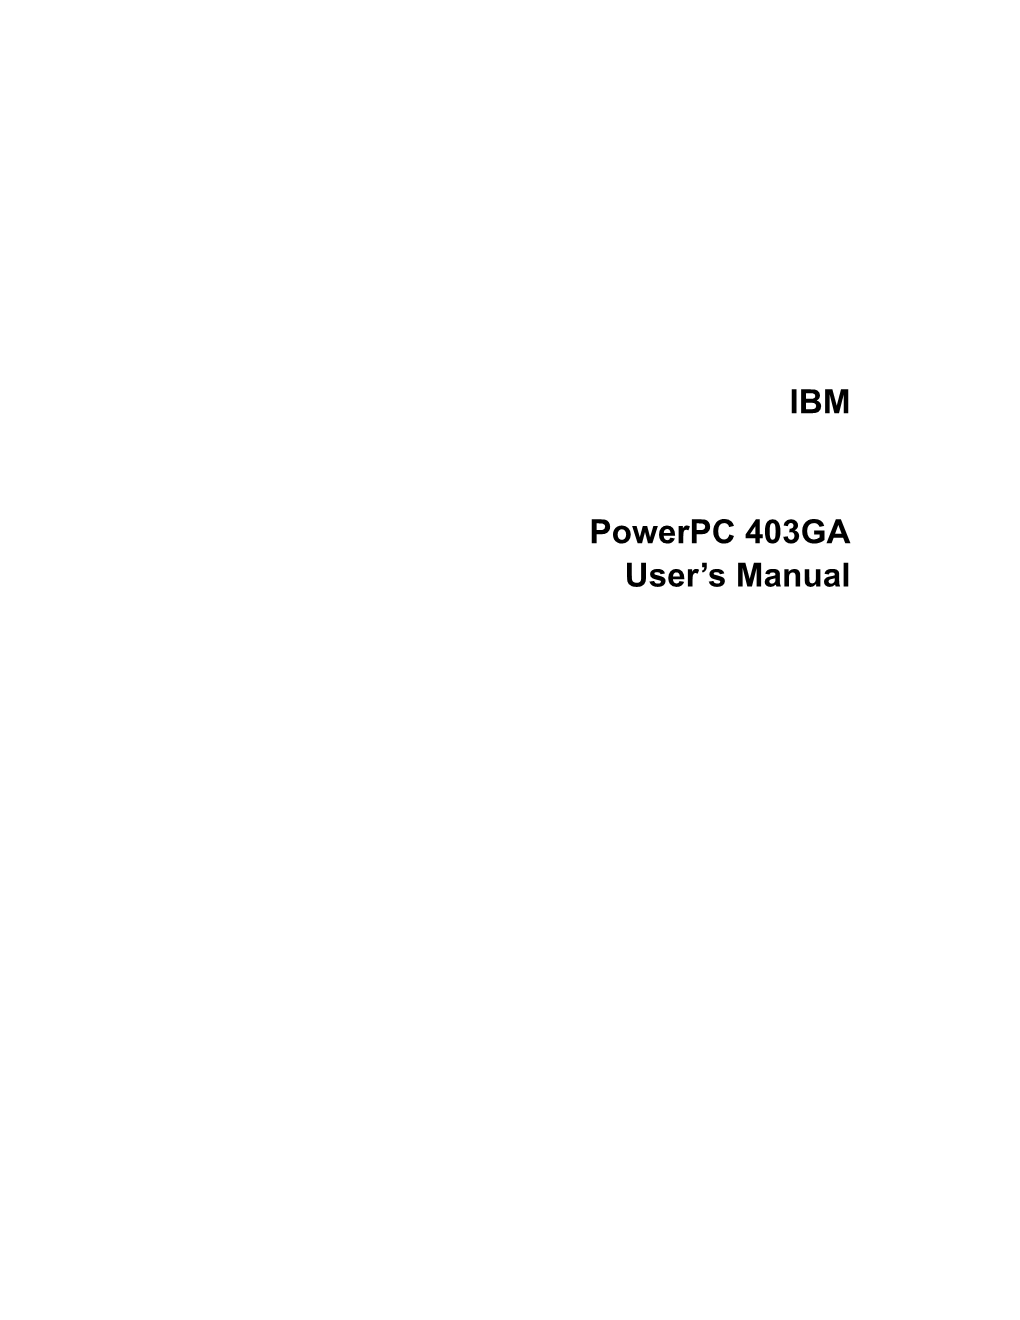 IBM Powerpc 403GA User's Manual